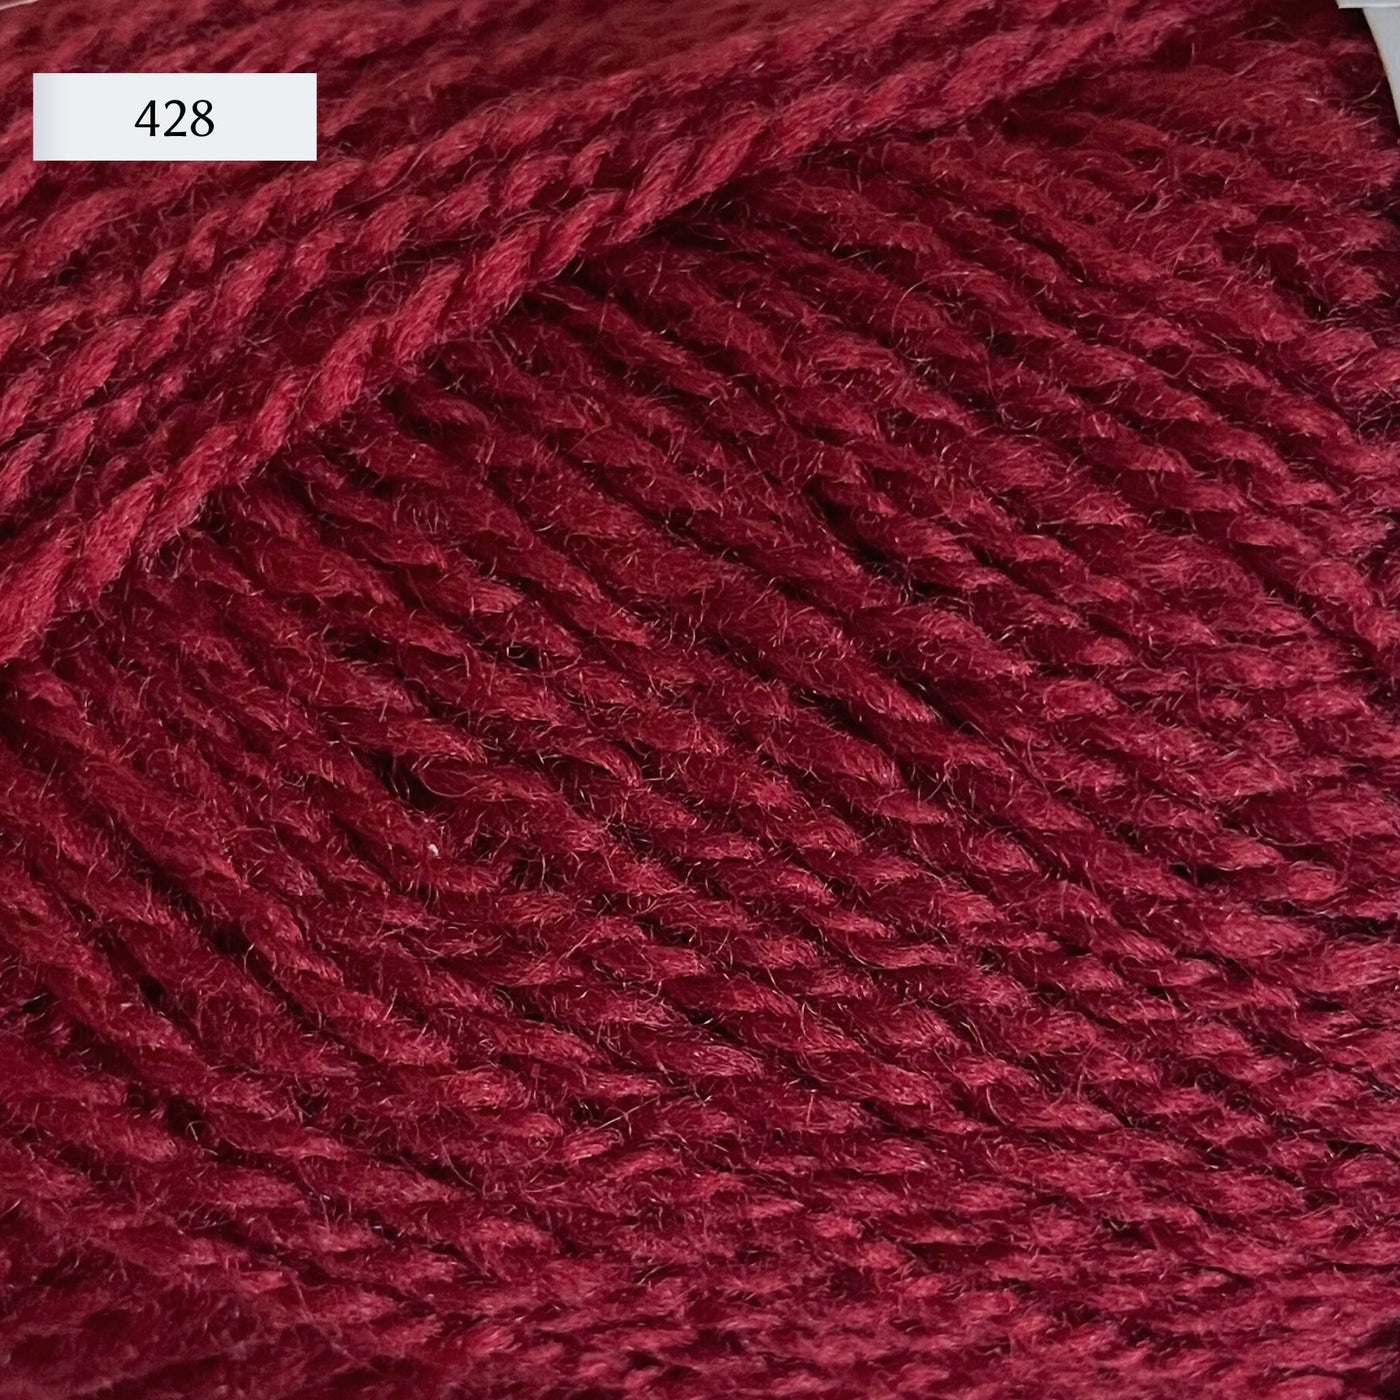 Rauma Finullgarn, a fingering/sport weight yarn, in color 428, a raspberry red